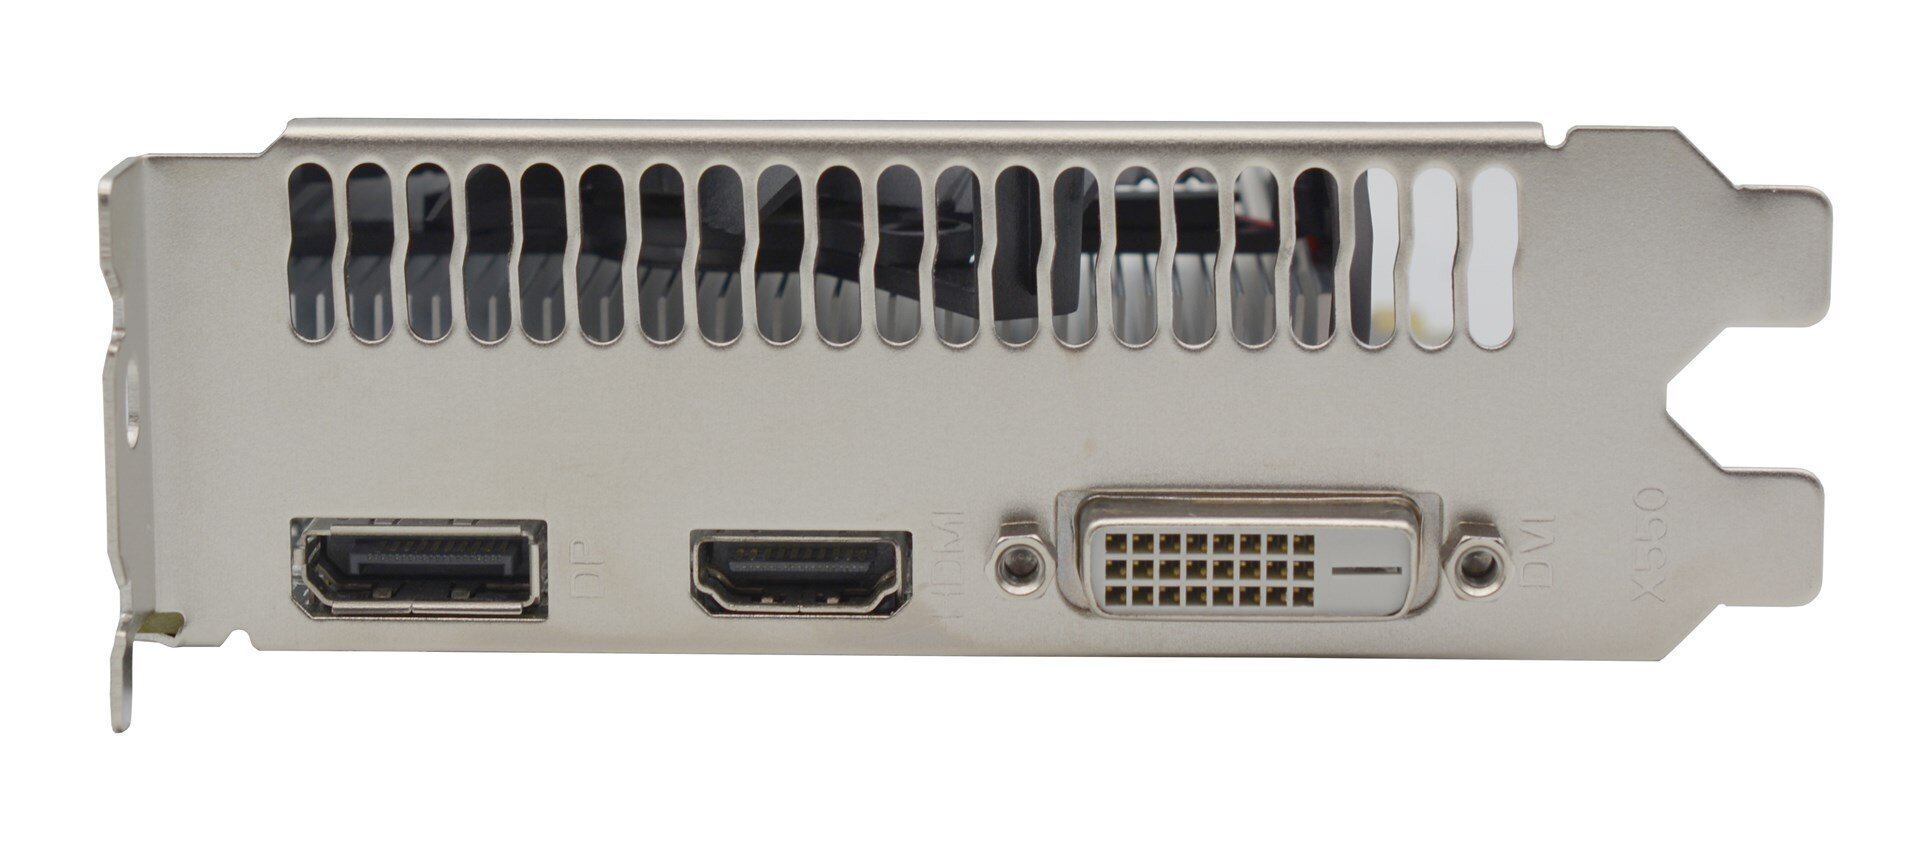 AFOX Radeon RX 560 4GB GDDR5 DVI HDMI DP DUAL FAN (AFRX560-4096D5H4-V2) cena un informācija | Videokartes (GPU) | 220.lv